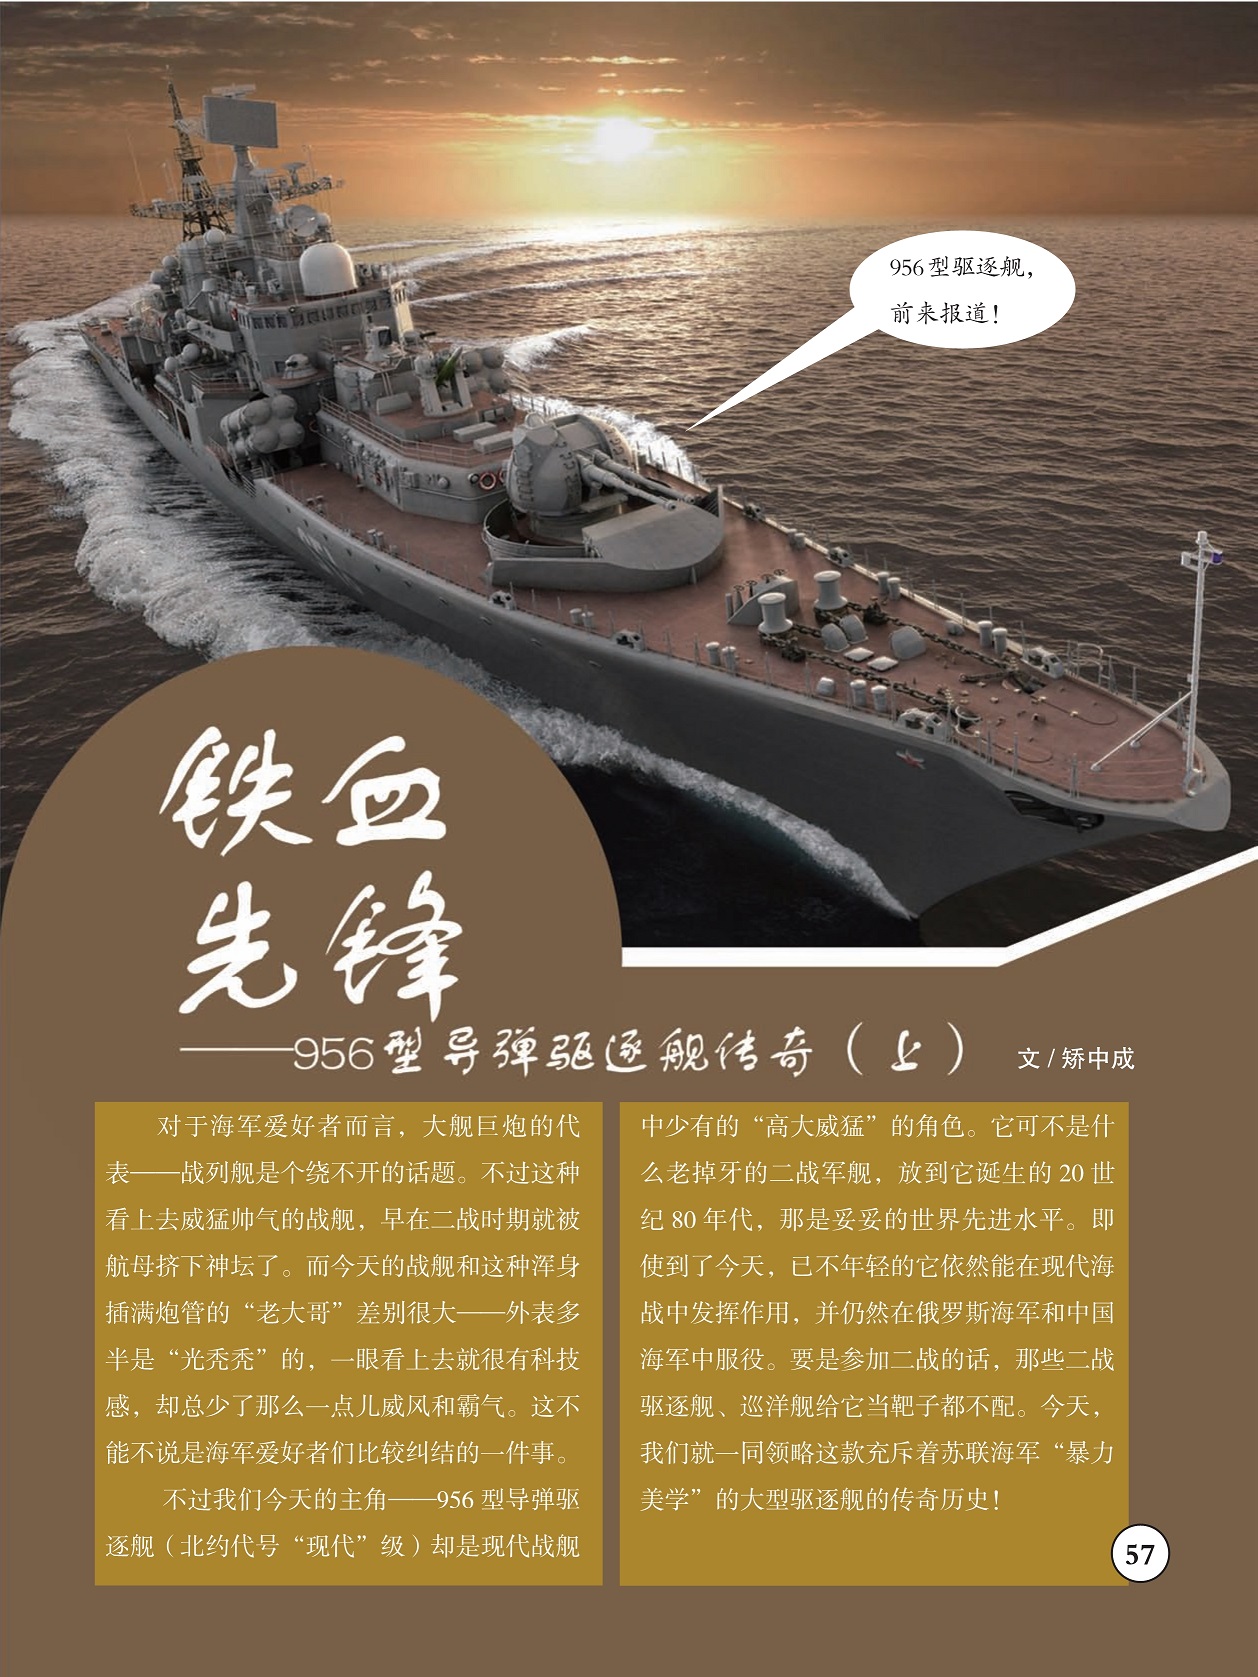 战列舰是大舰巨炮的代表,大型驱逐舰的传奇历史